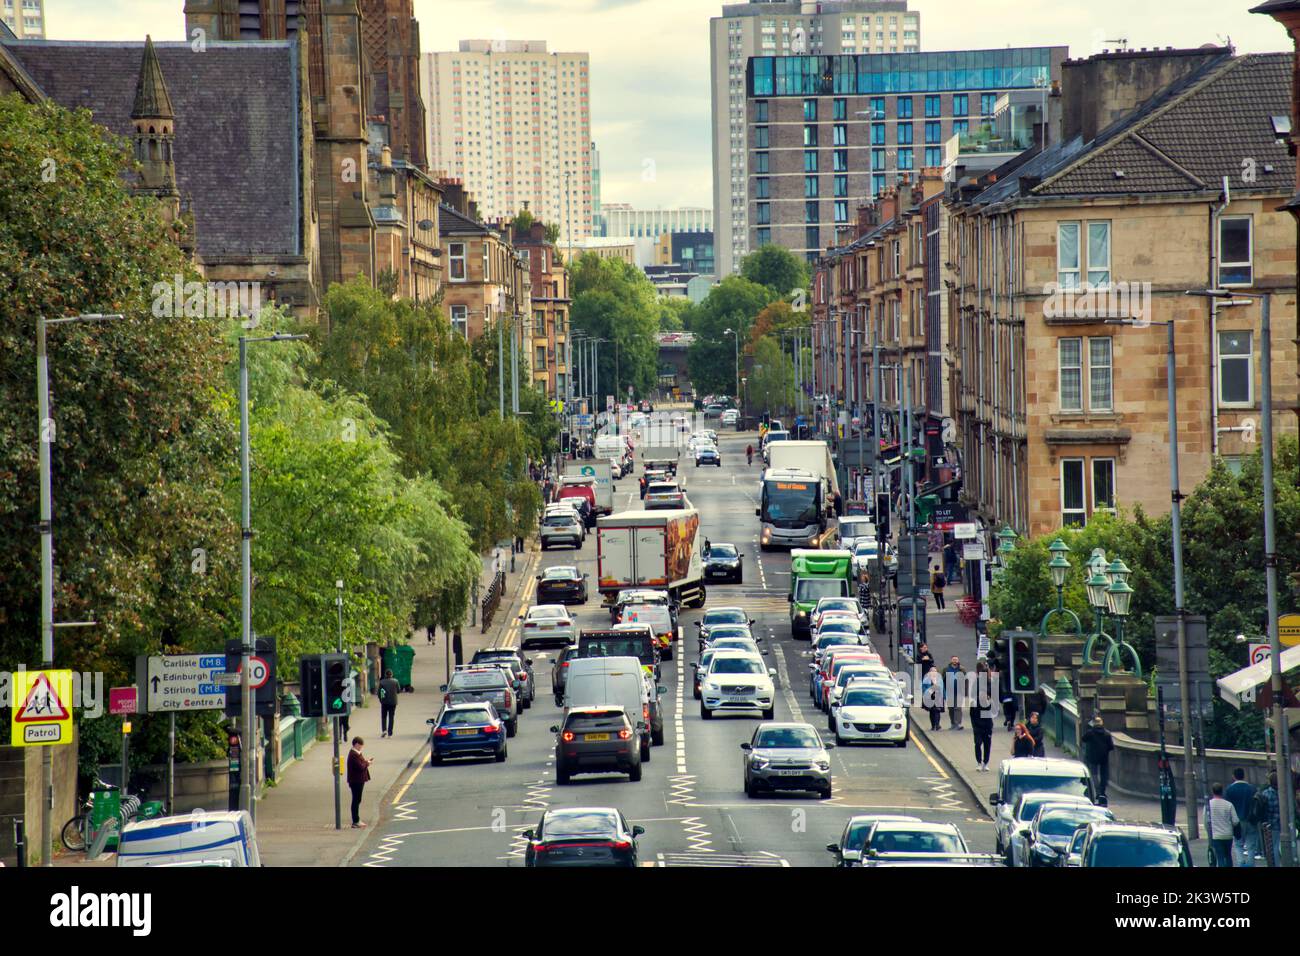 Great Western Road Blick in die Stadt eine der coolsten Gegenden nach Time Out Glasgow, Schottland, Großbritannien Stockfoto